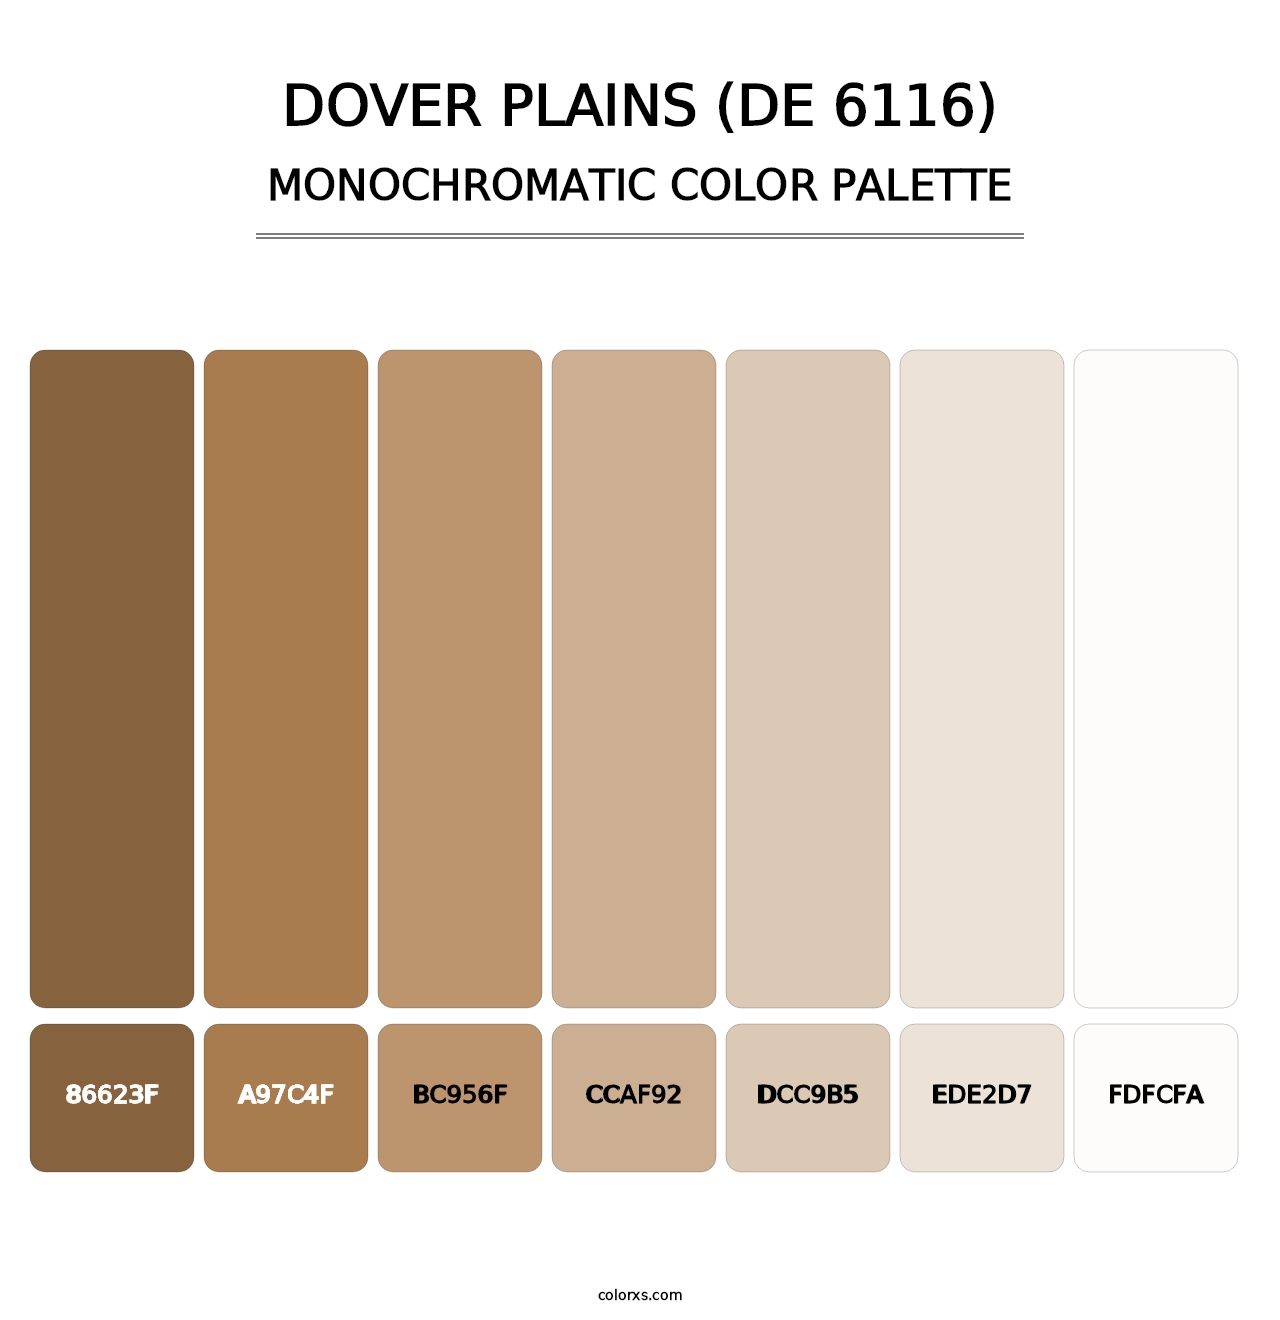 Dover Plains (DE 6116) - Monochromatic Color Palette